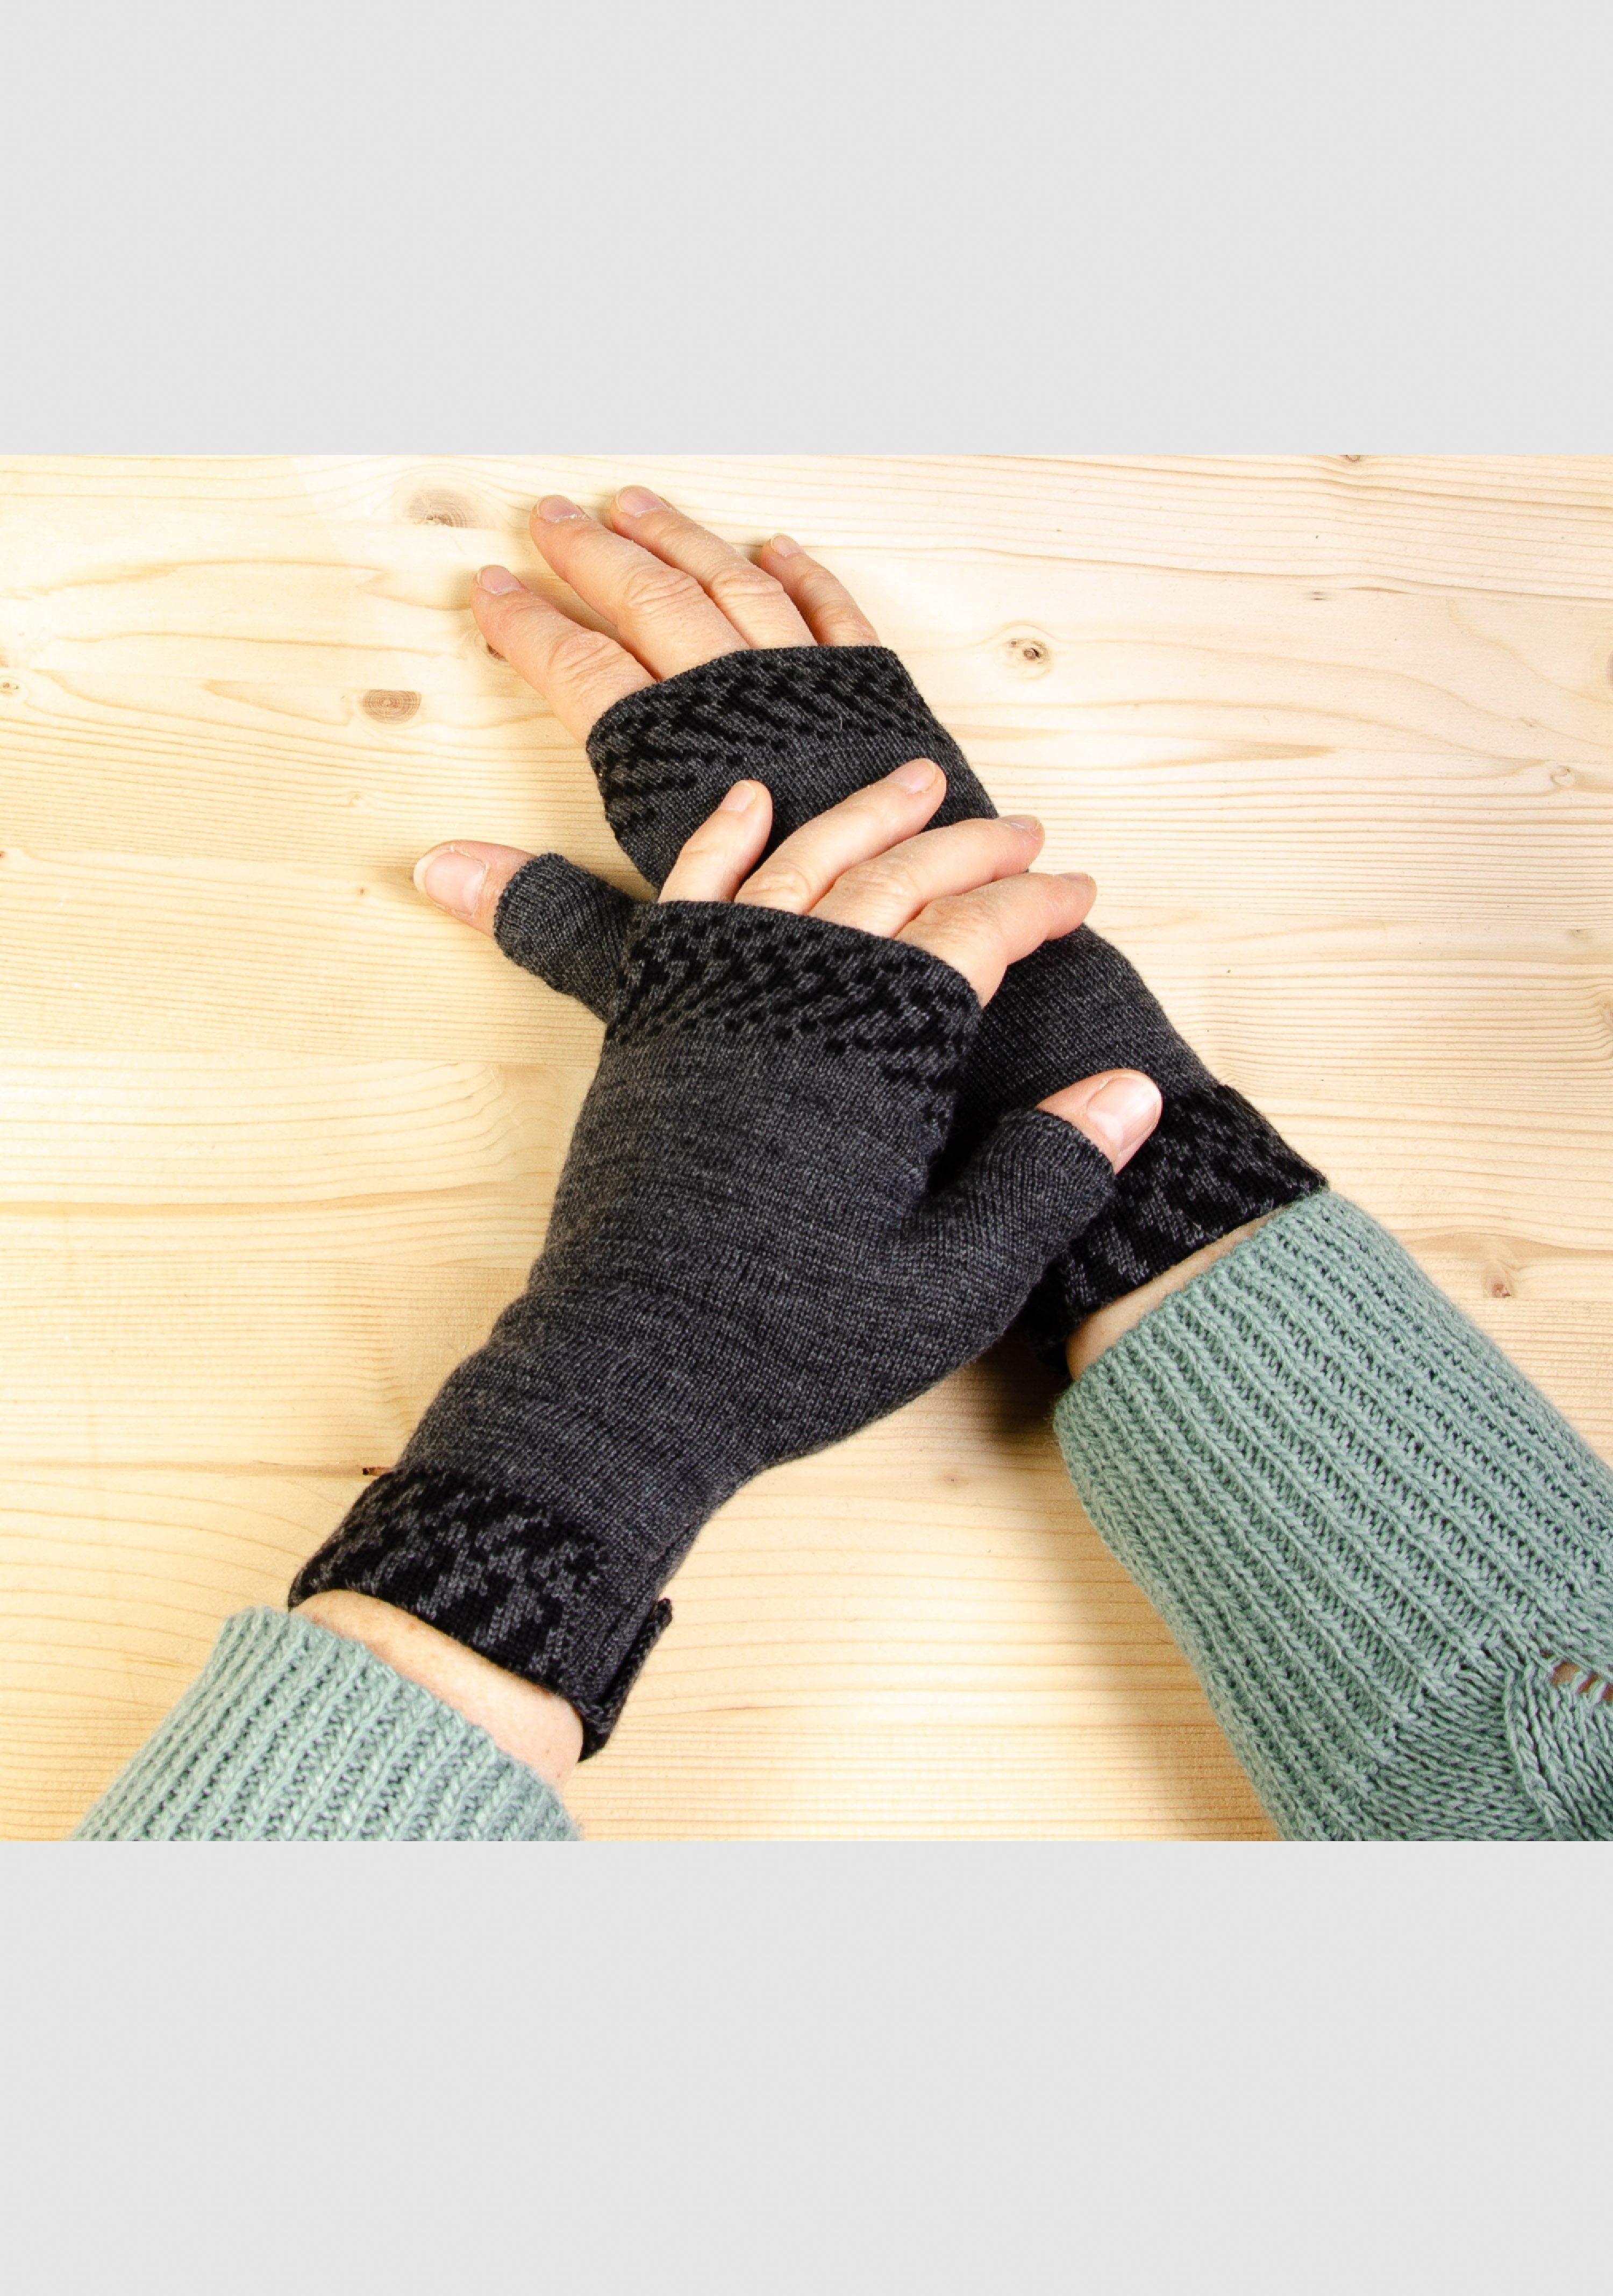 Pixel Handwärmer Merino slow fashion Strickhandschuhe extrasoft aus in Farben vielen Merino LANARTO 100% anthrazit_schwarz